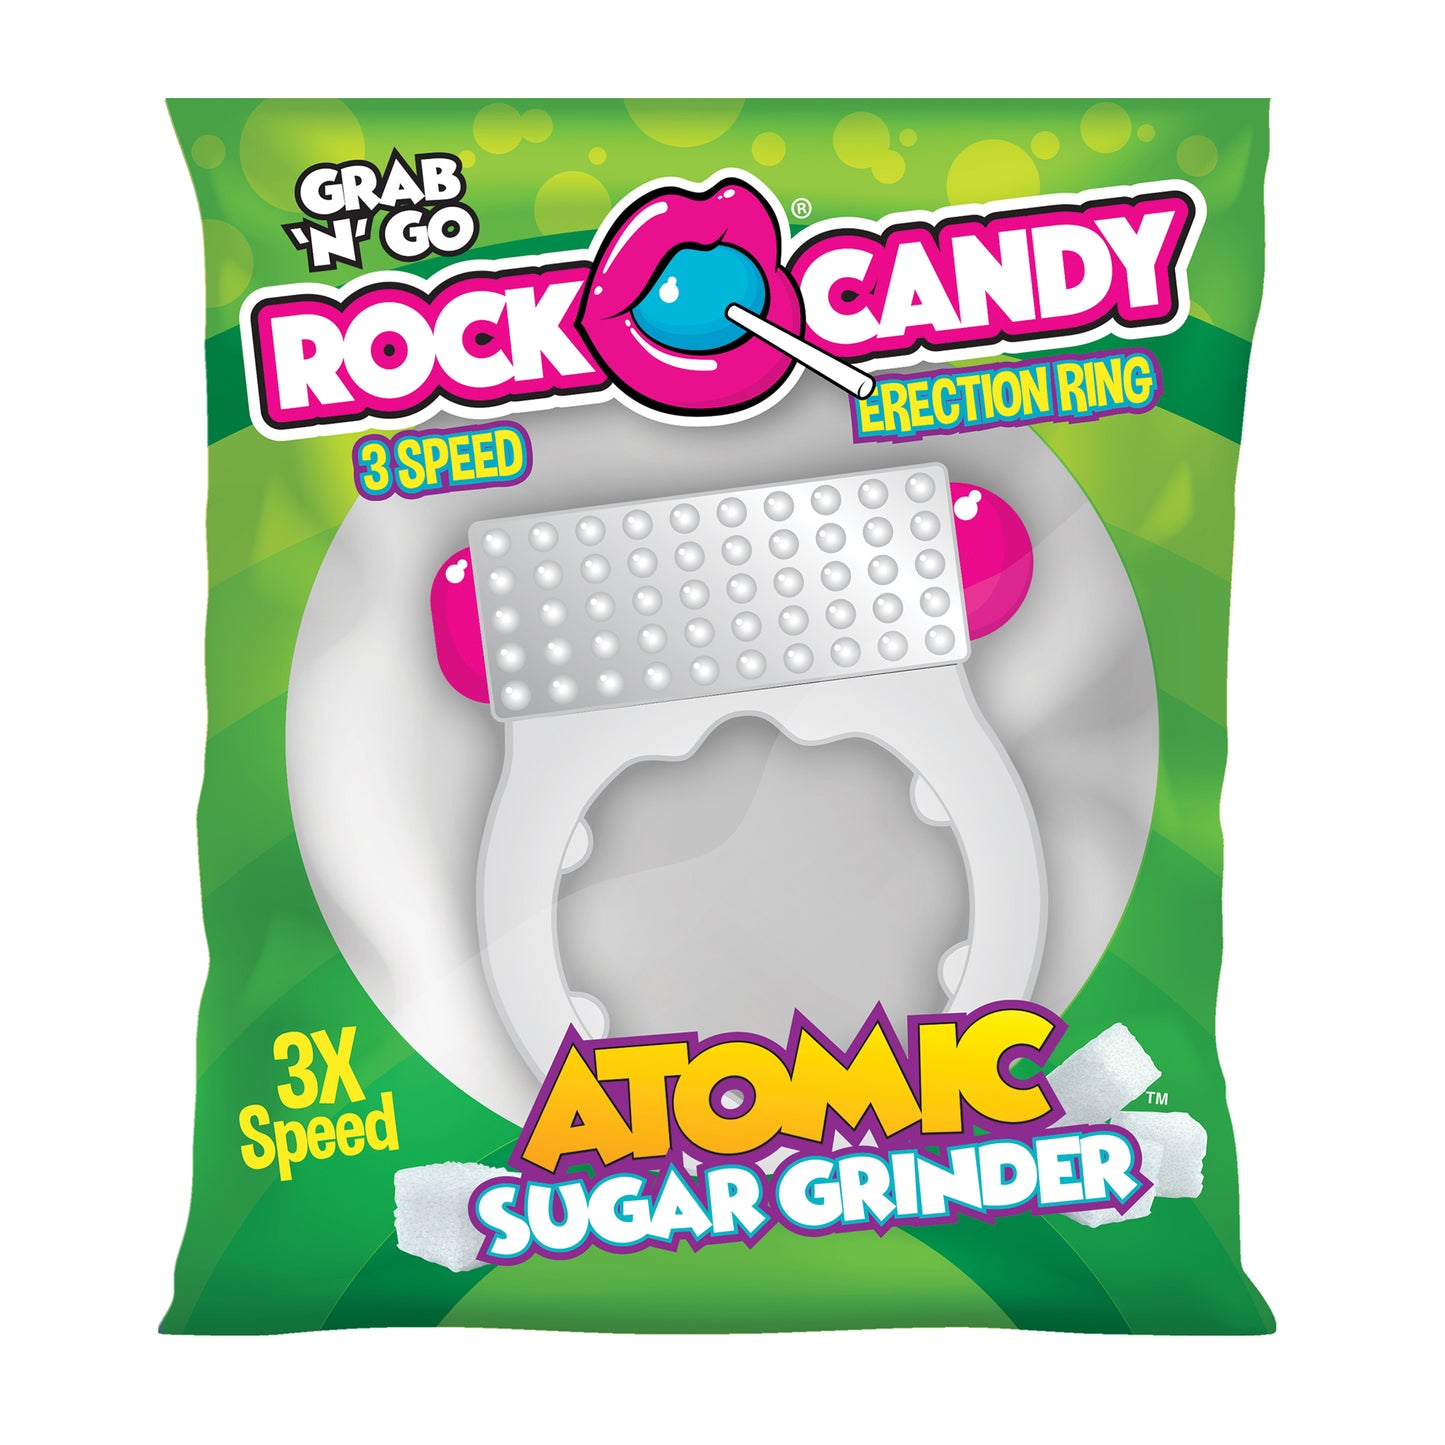 Atomic Sugar Grinder